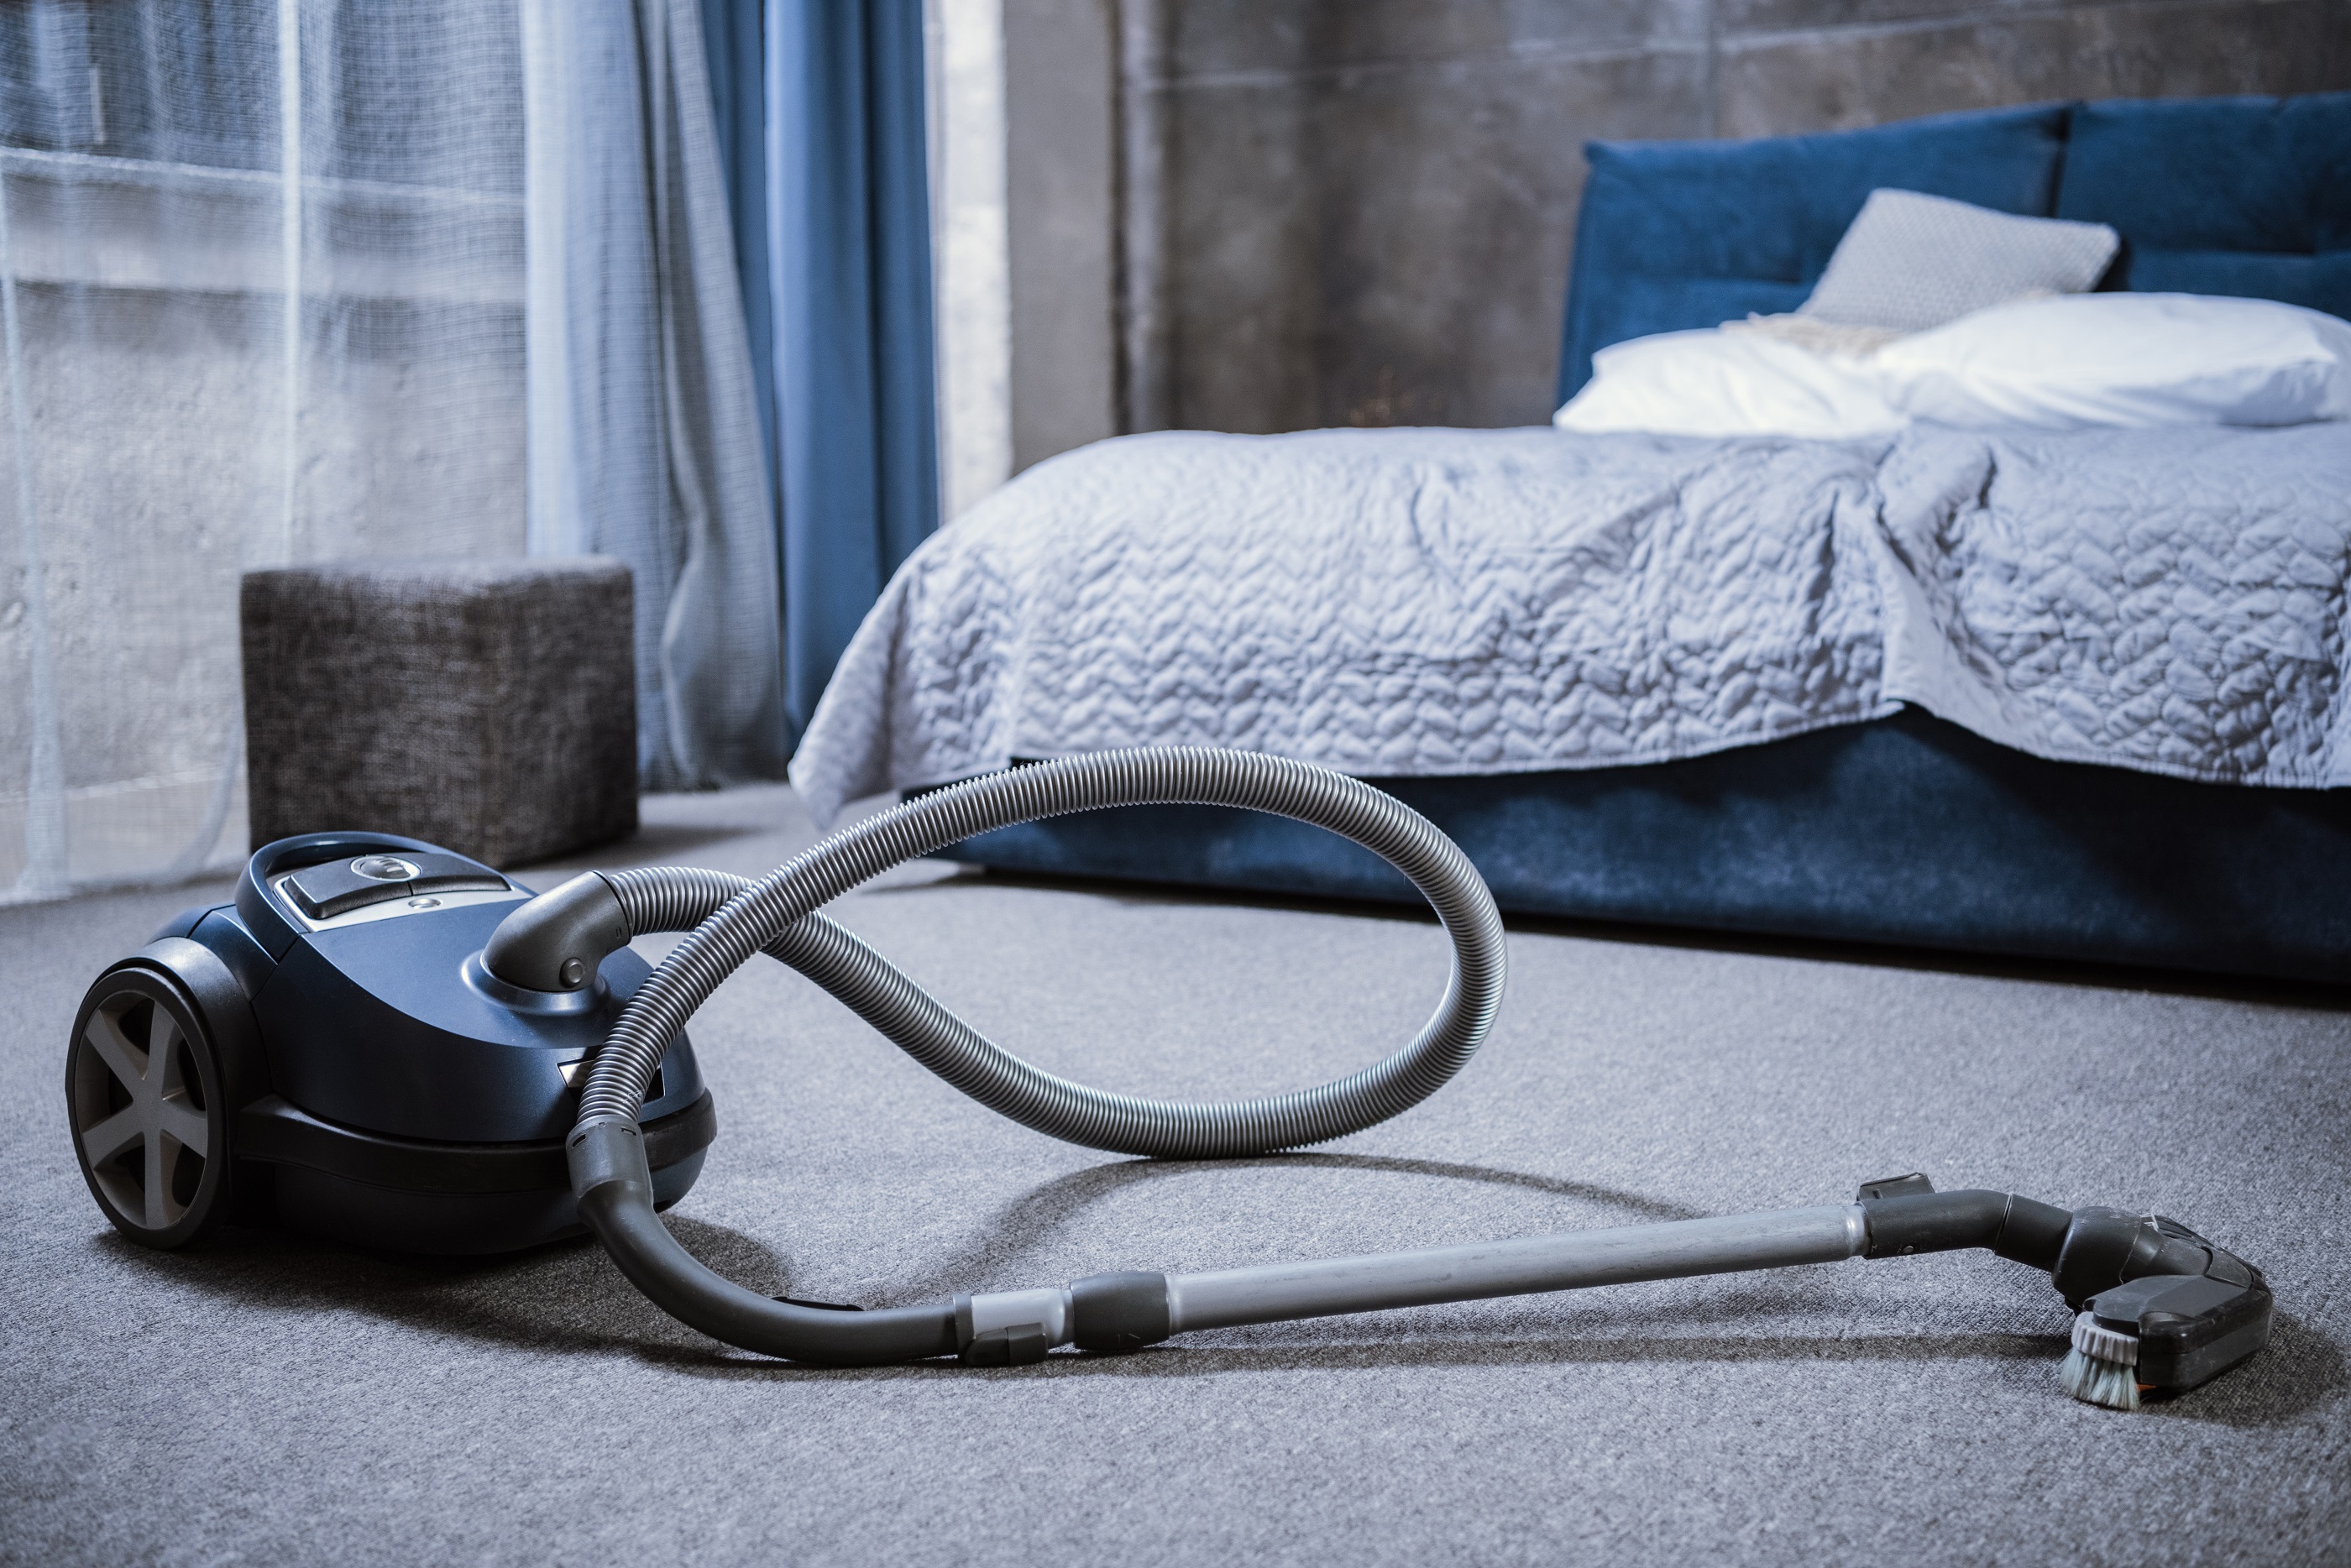 vacuum-cleaner-on-grey-carpet-in-bedroom-2021-08-29-10-18-41-utc.jpg